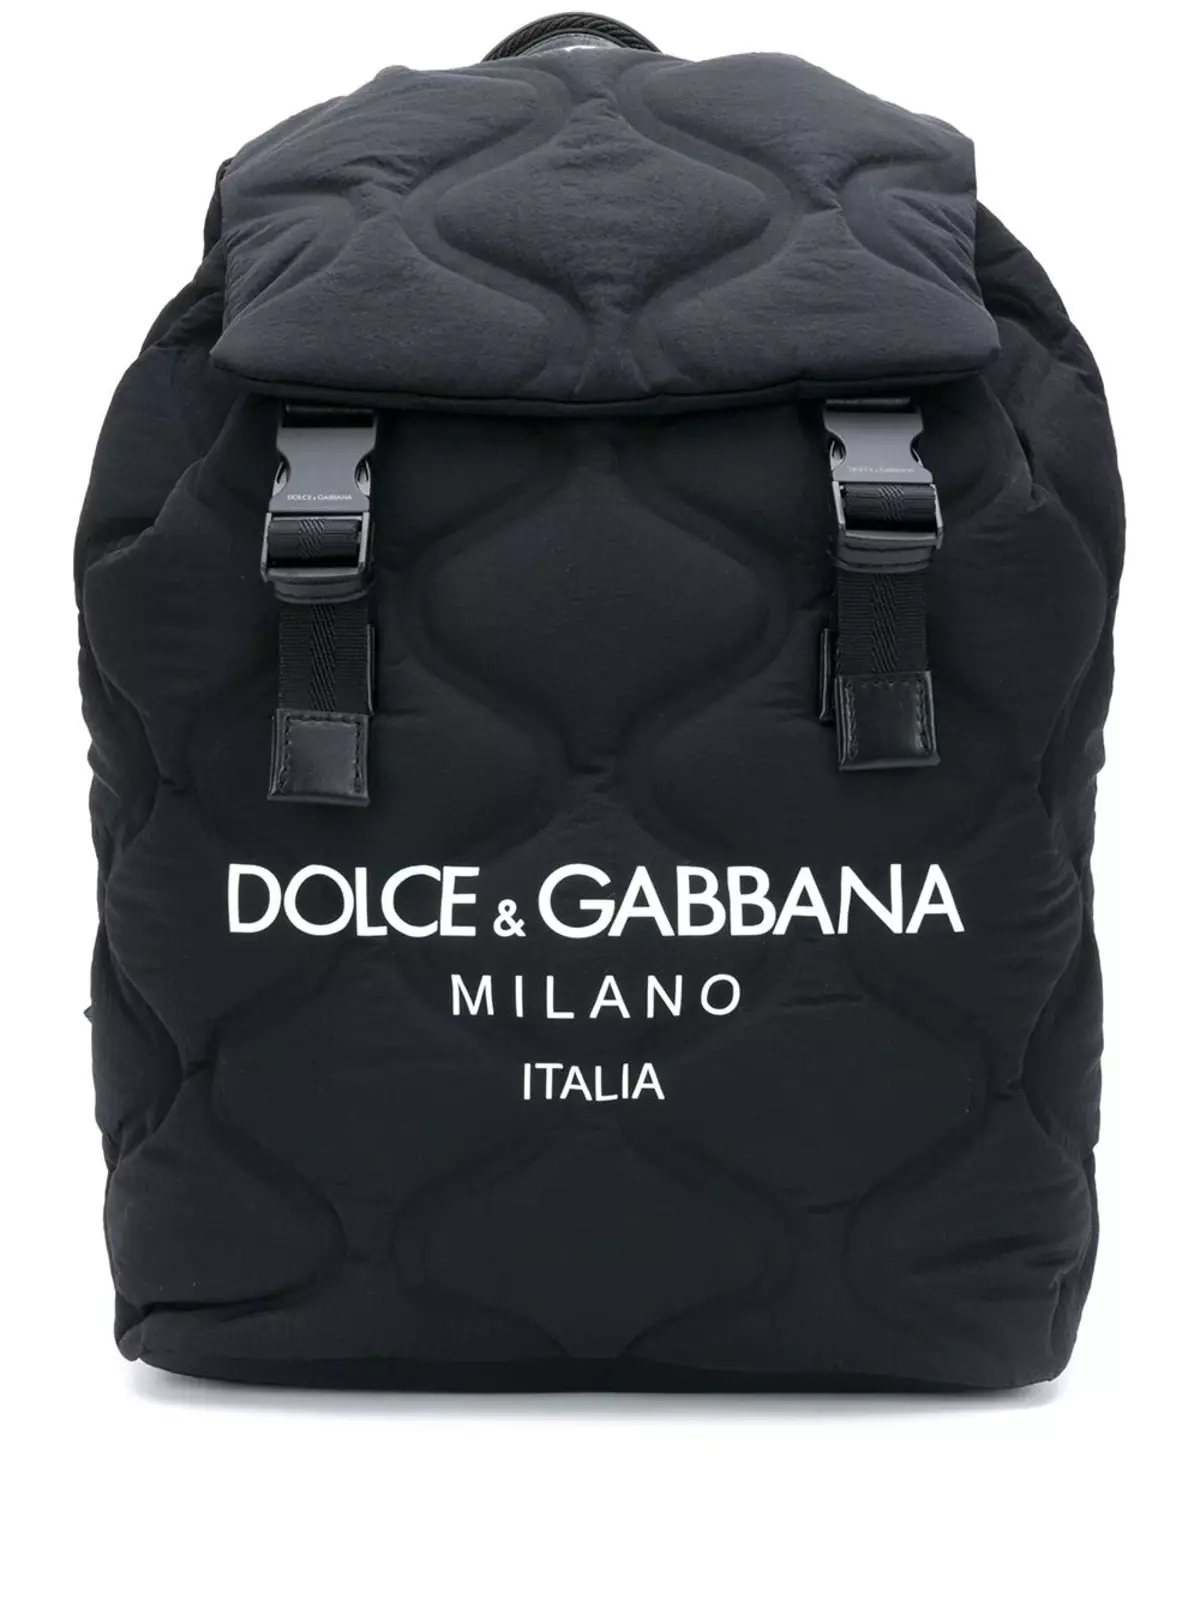 Dolce＆Gabbana Backpacks：女性和男士，黑色和红色，皮革背包袋和其他型号。如何区分原始副本？ 2559_32